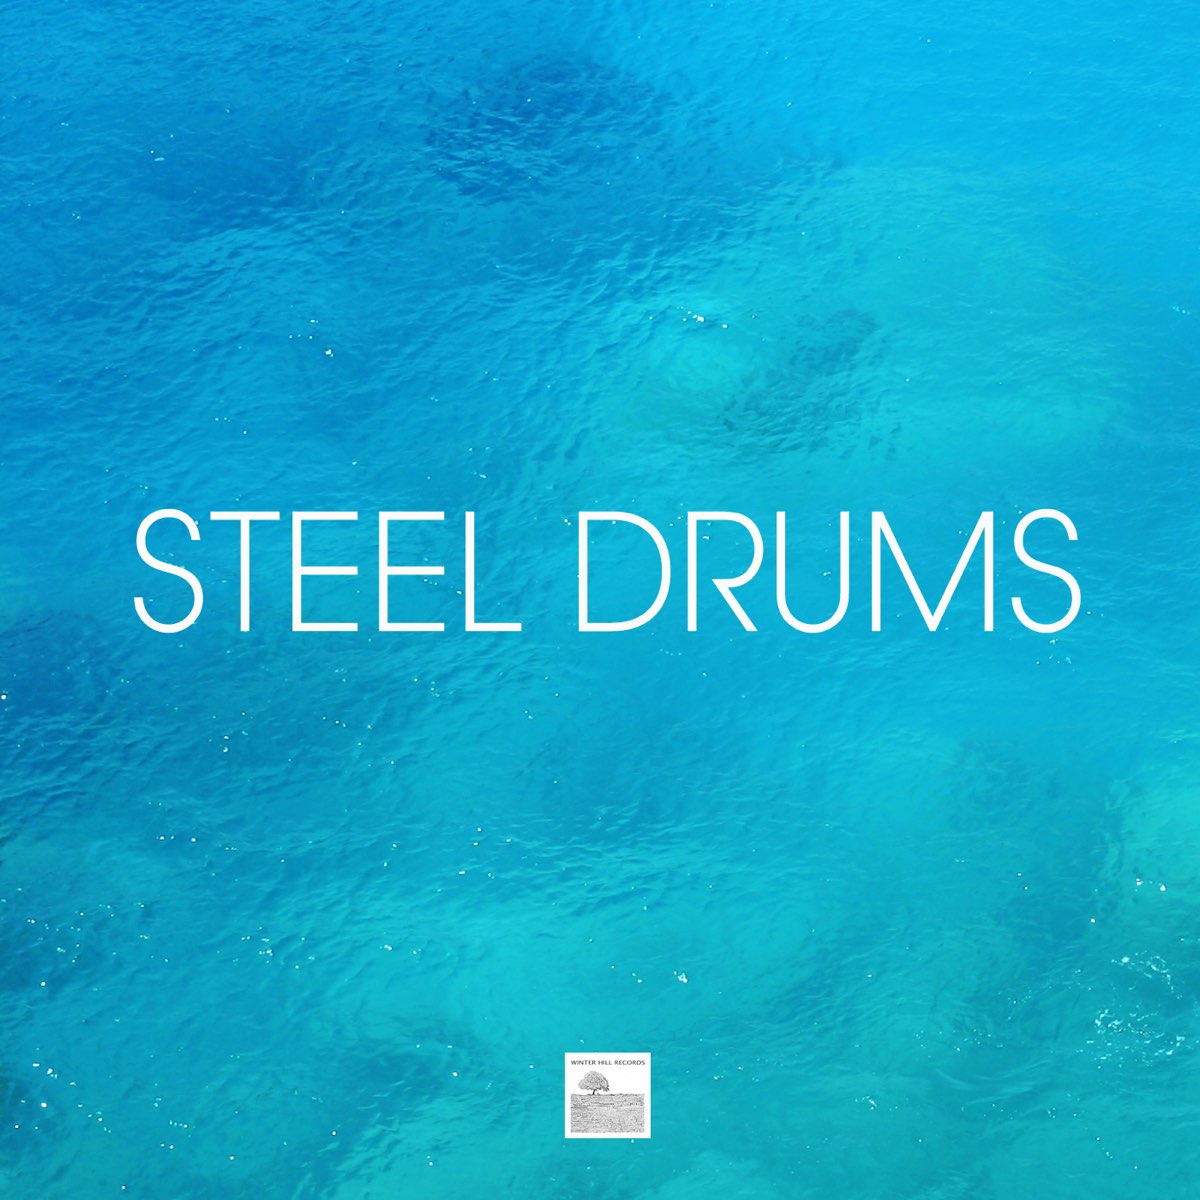 Steel Drums - Caribbean Steel Drum Music, Steelpan and Caribbean Drums  Dance Party by Steel Drums Music Crew on Apple Music